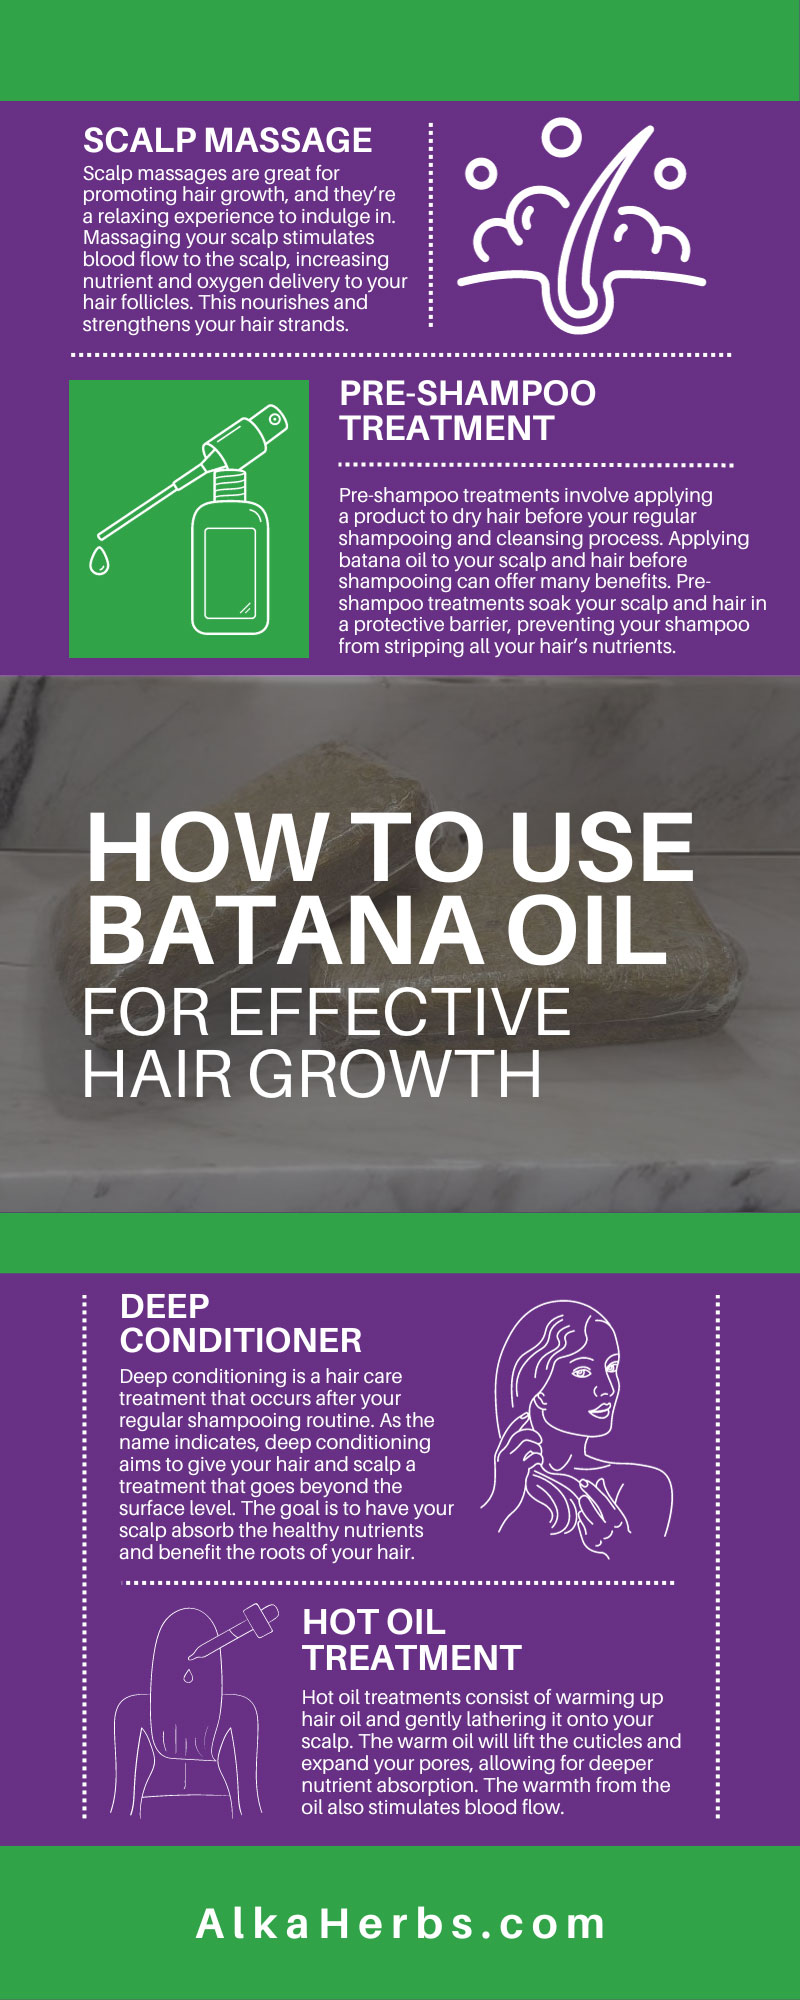 How To Use Batana Oil for Effective Hair Growth